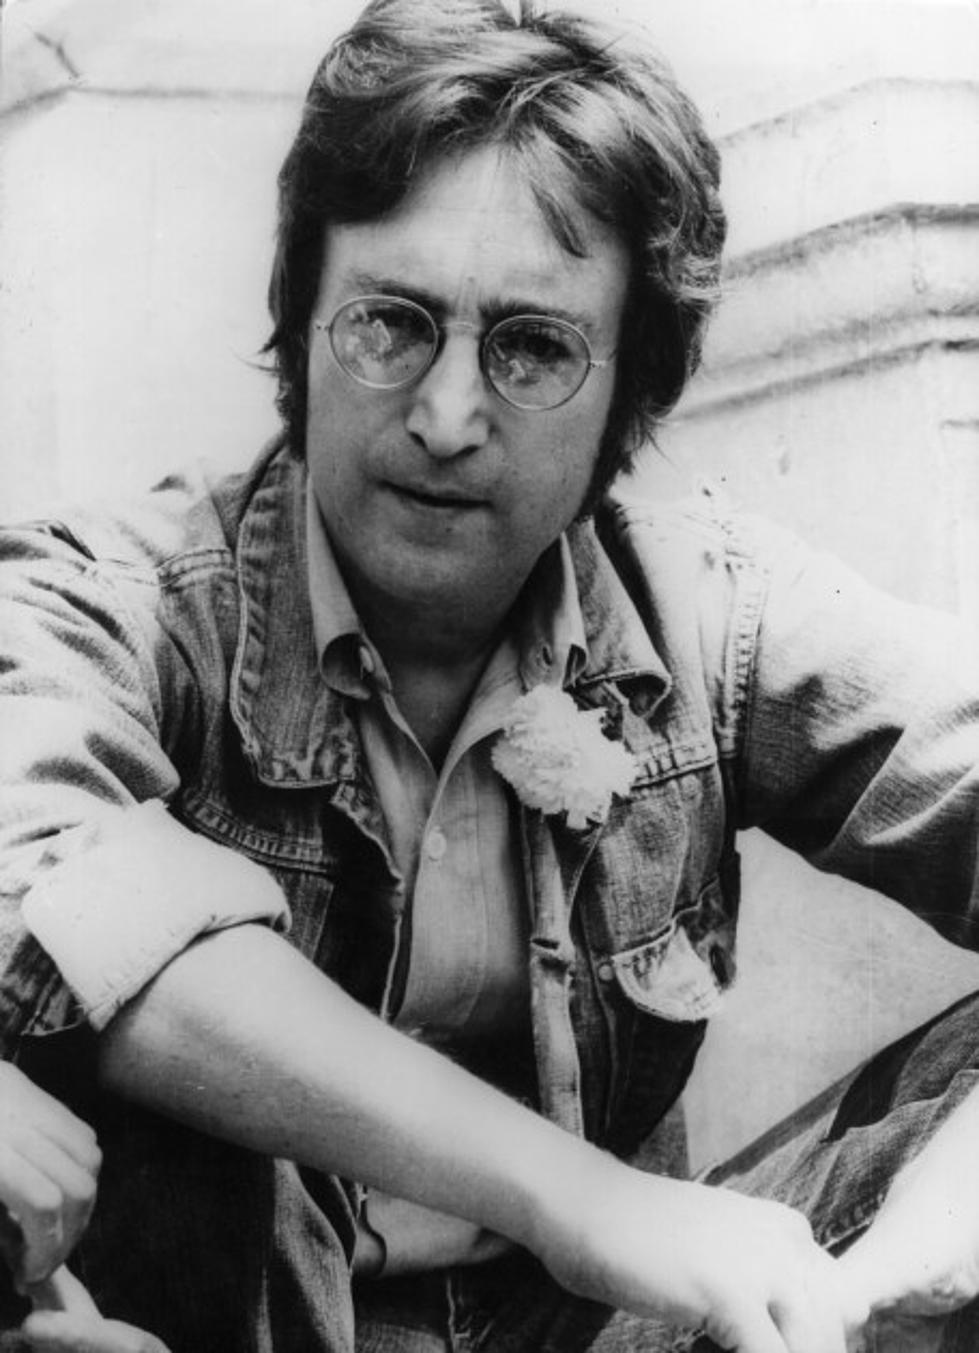 Watch John Lennon On Monday Night Football 1974 [VIDEO]